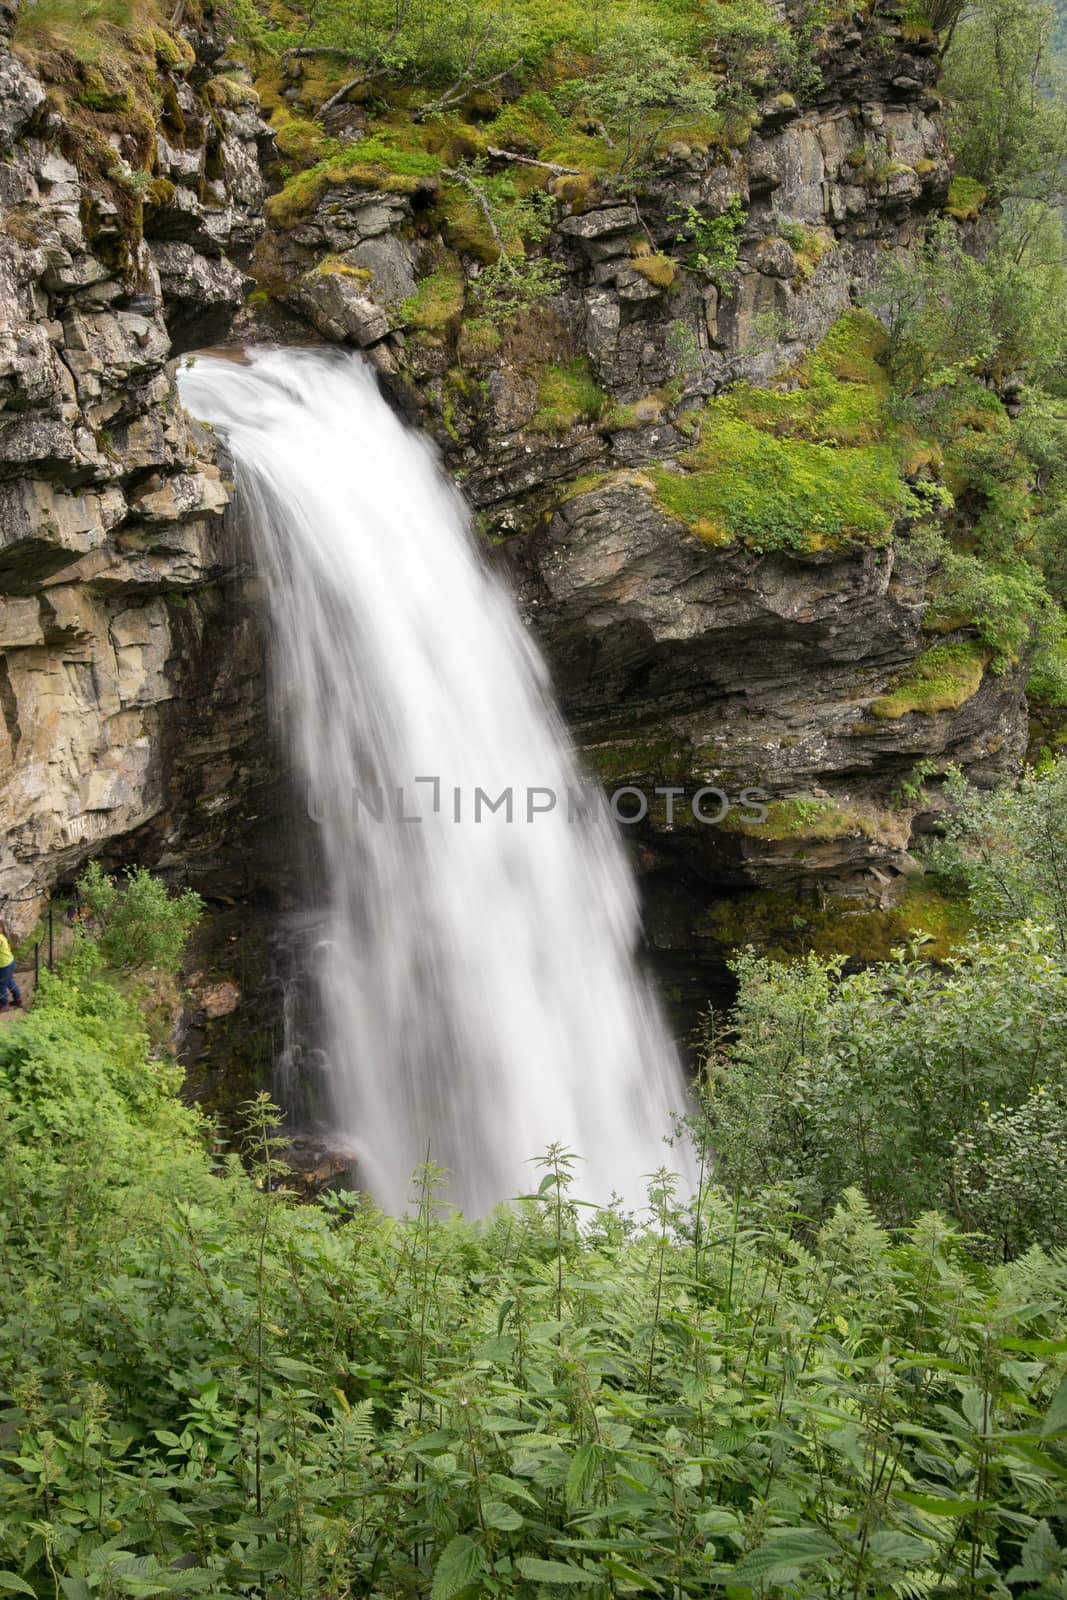 Waterfall view in Norway summer trip by javax